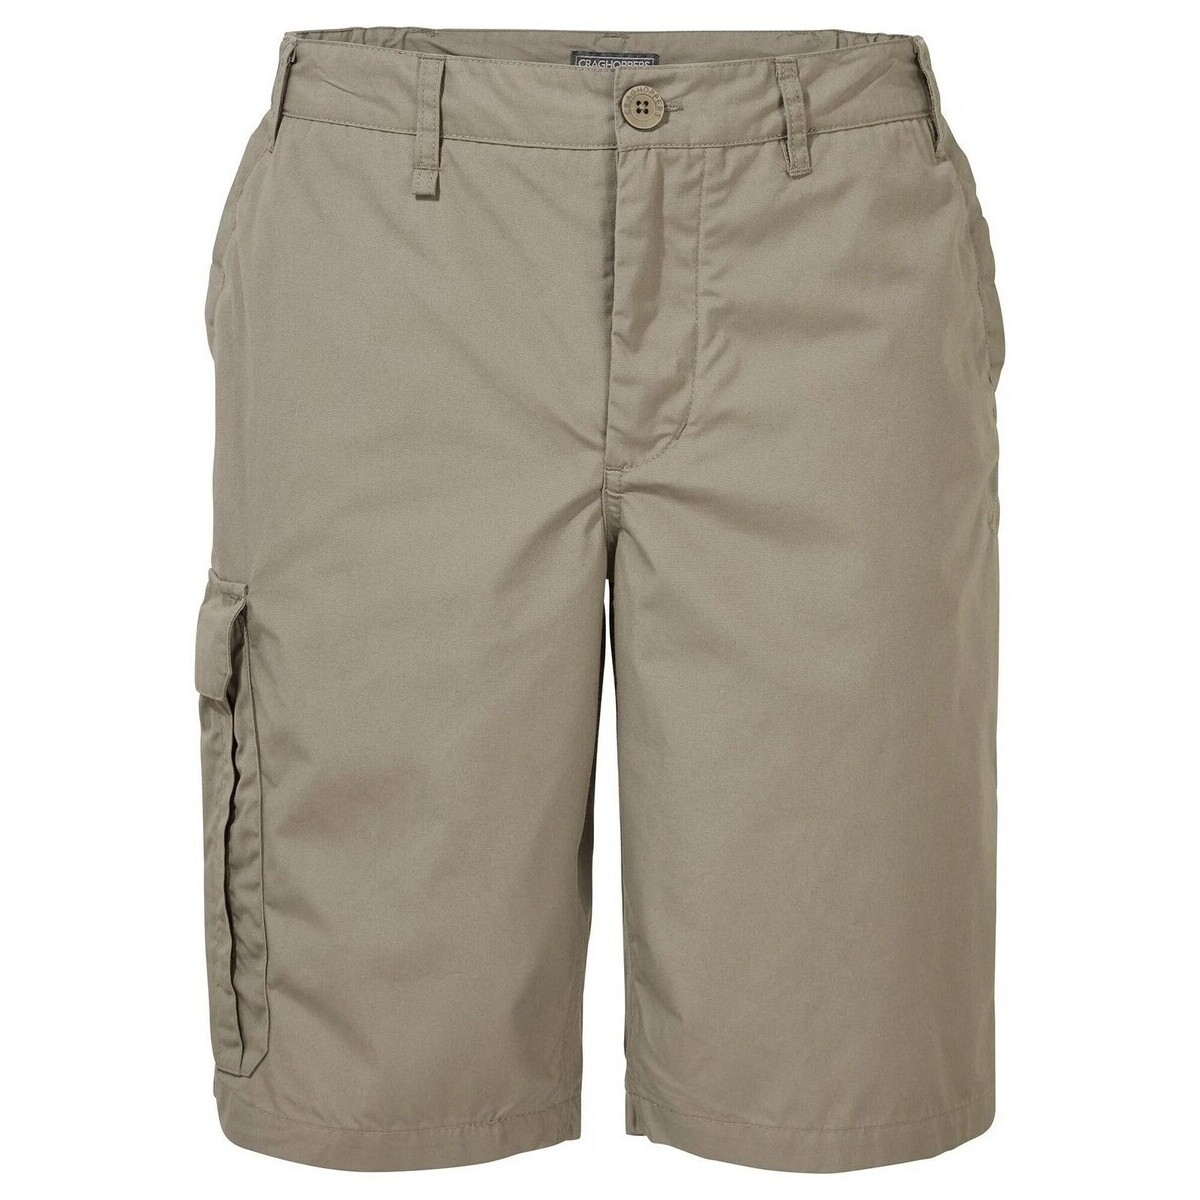 Vêtements Homme Shorts / Bermudas Craghoppers  Beige